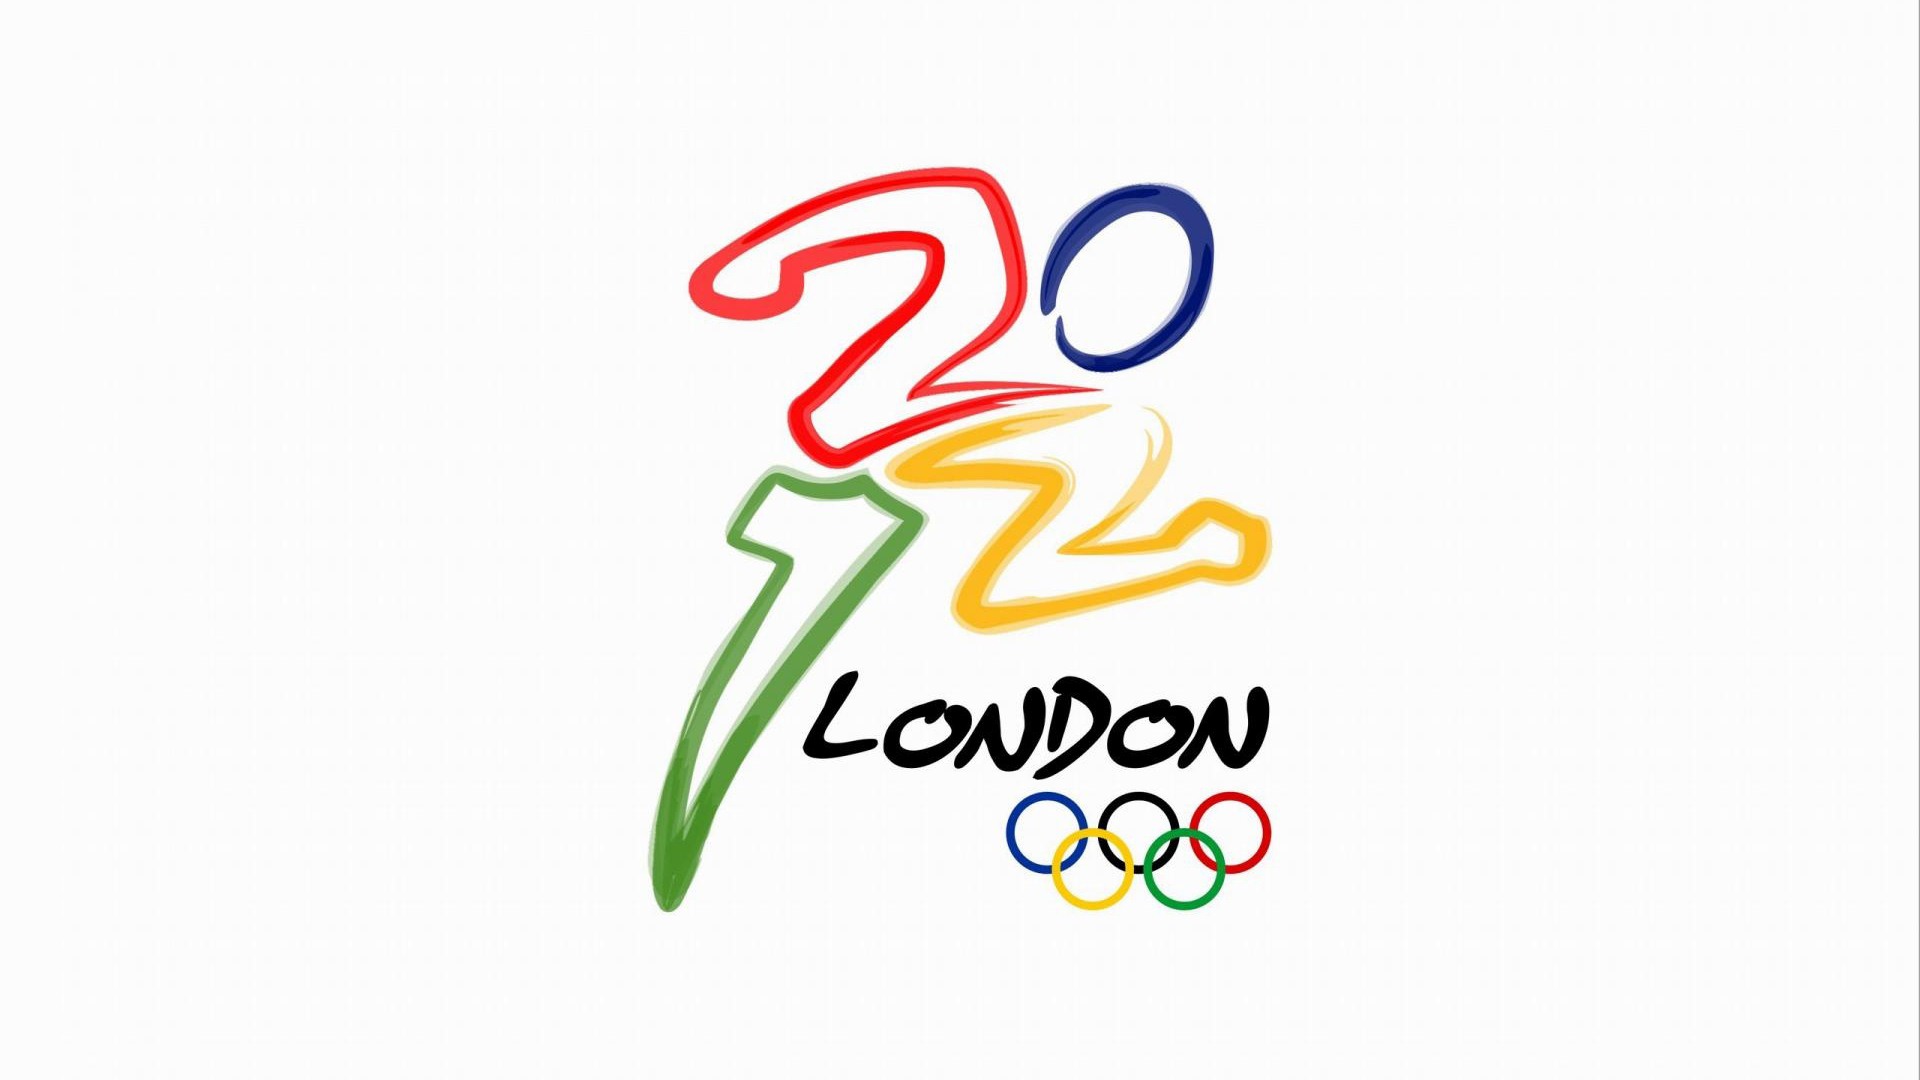 Londres 2012 Olimpiadas fondos temáticos (2) #22 - 1920x1080